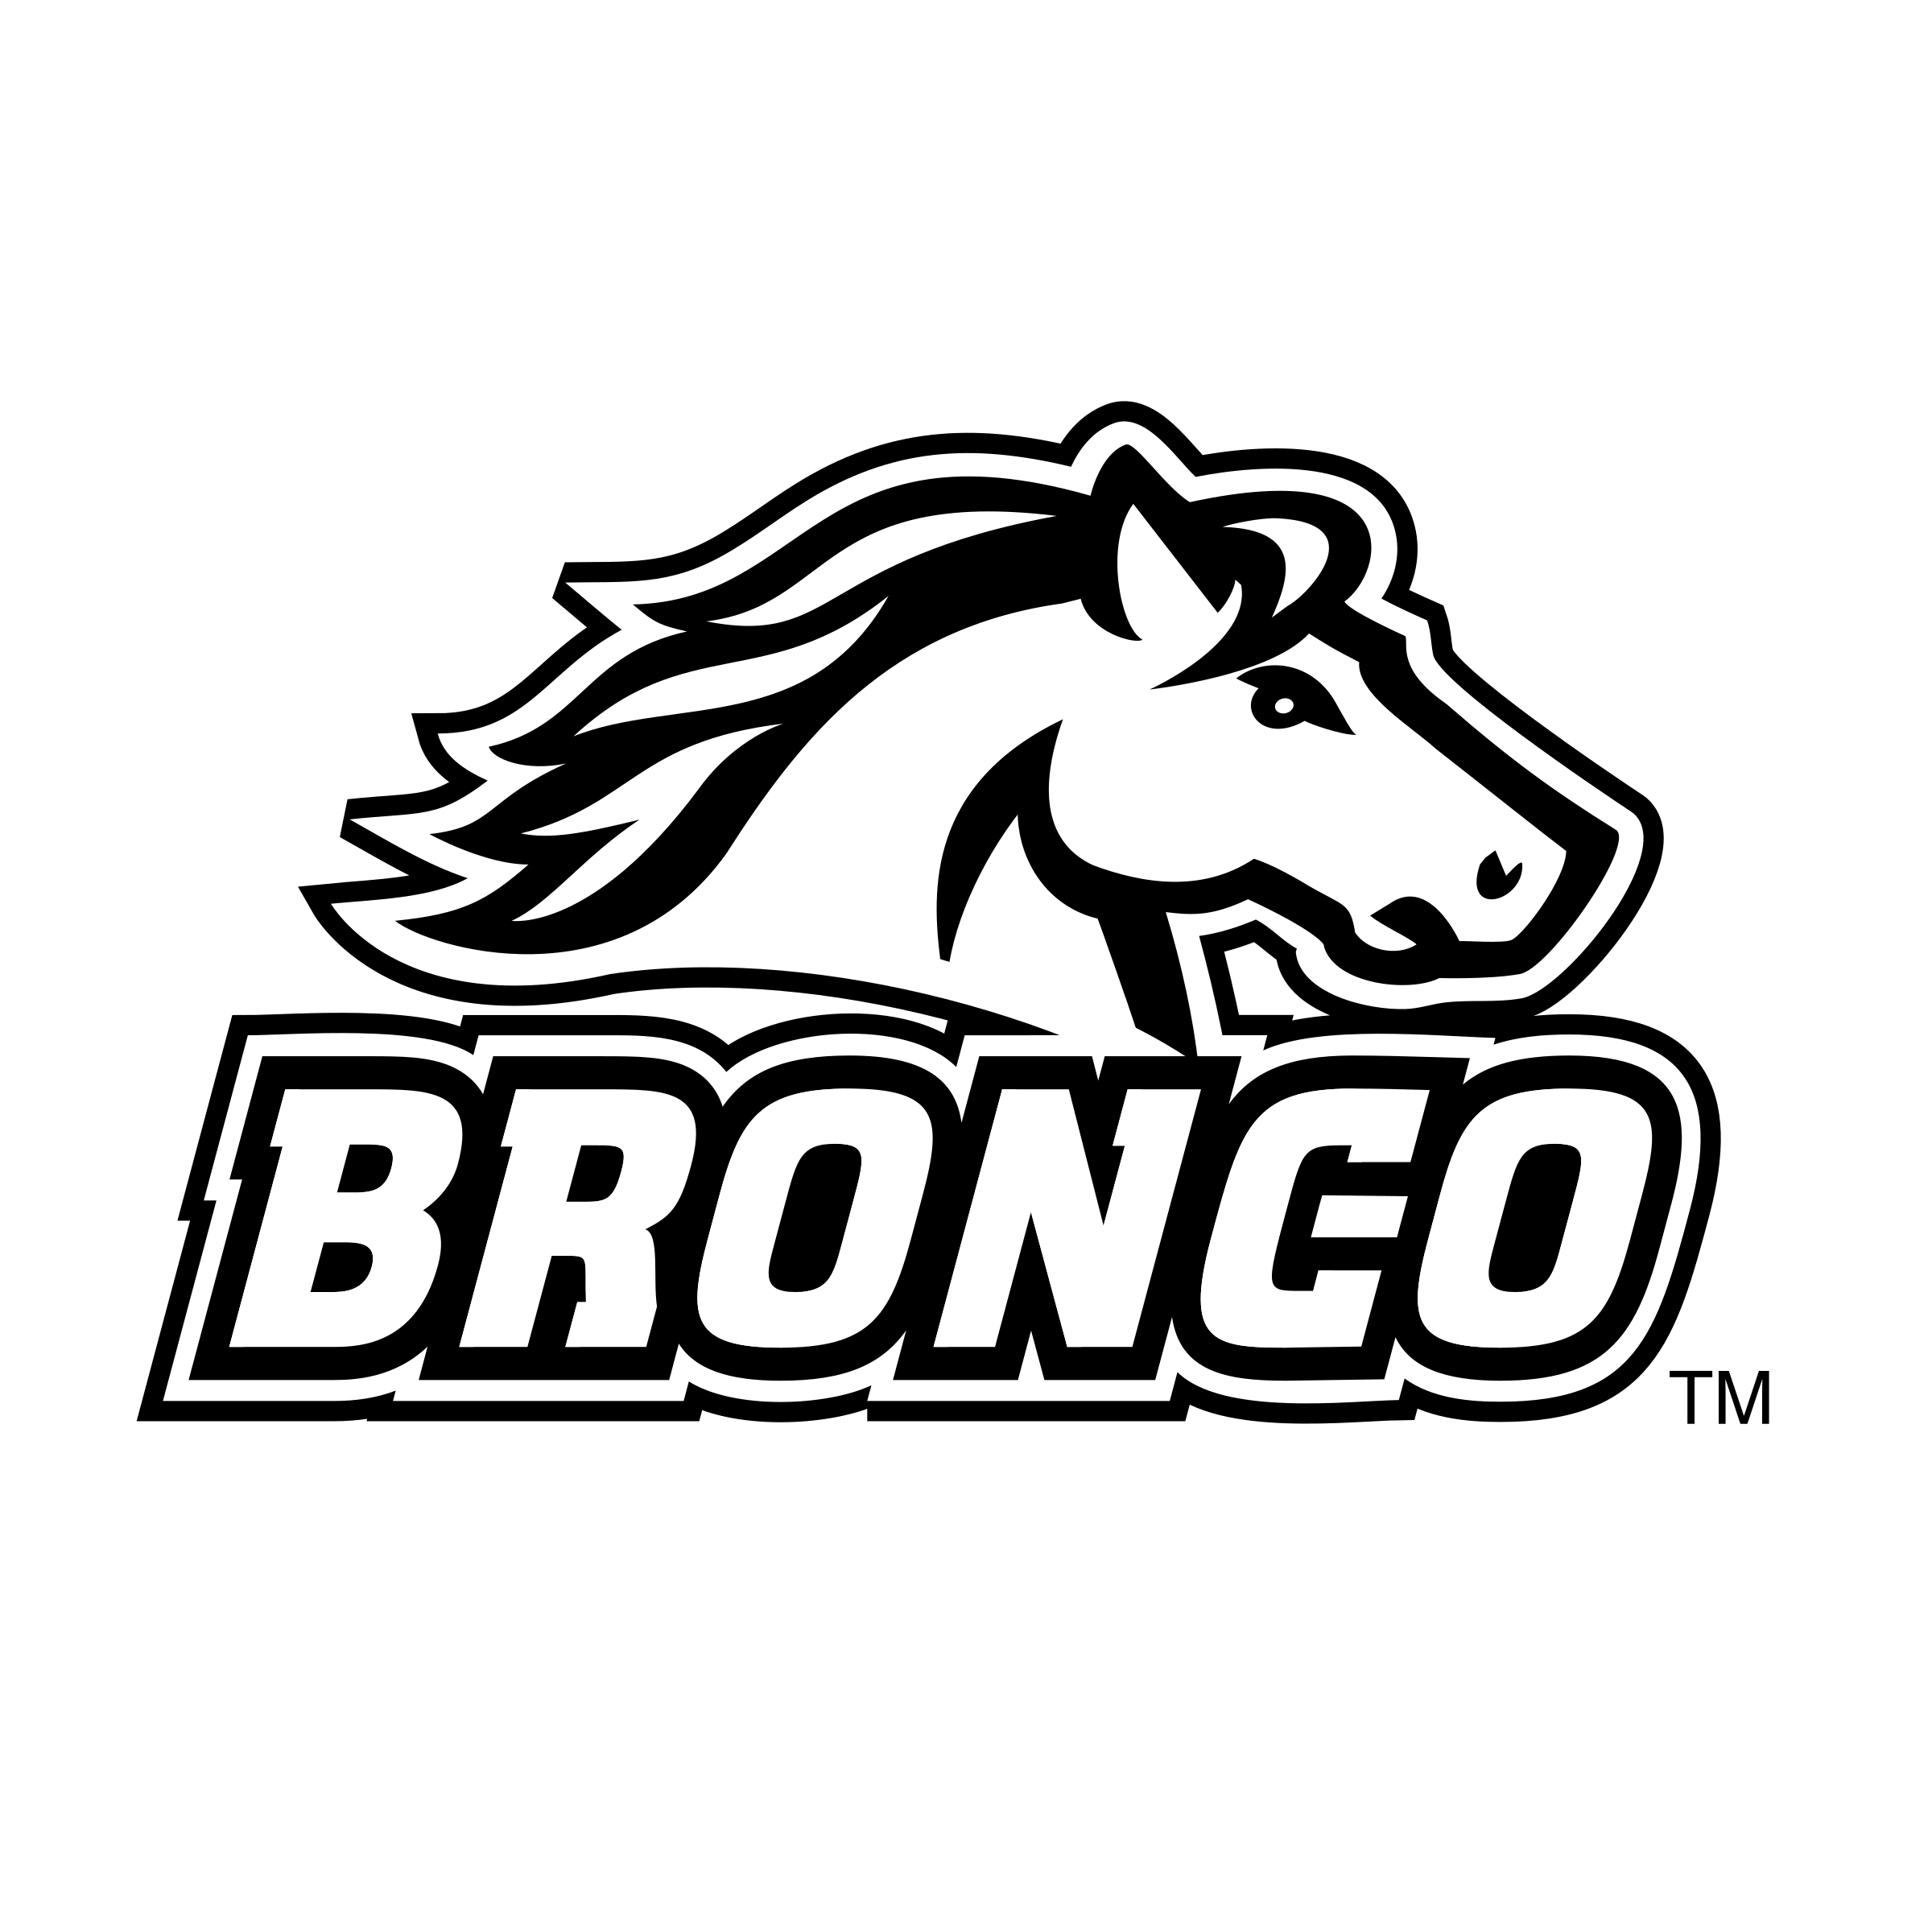 Bronco Logo - Bronco Logo PNG Transparent & SVG Vector - Freebie Supply